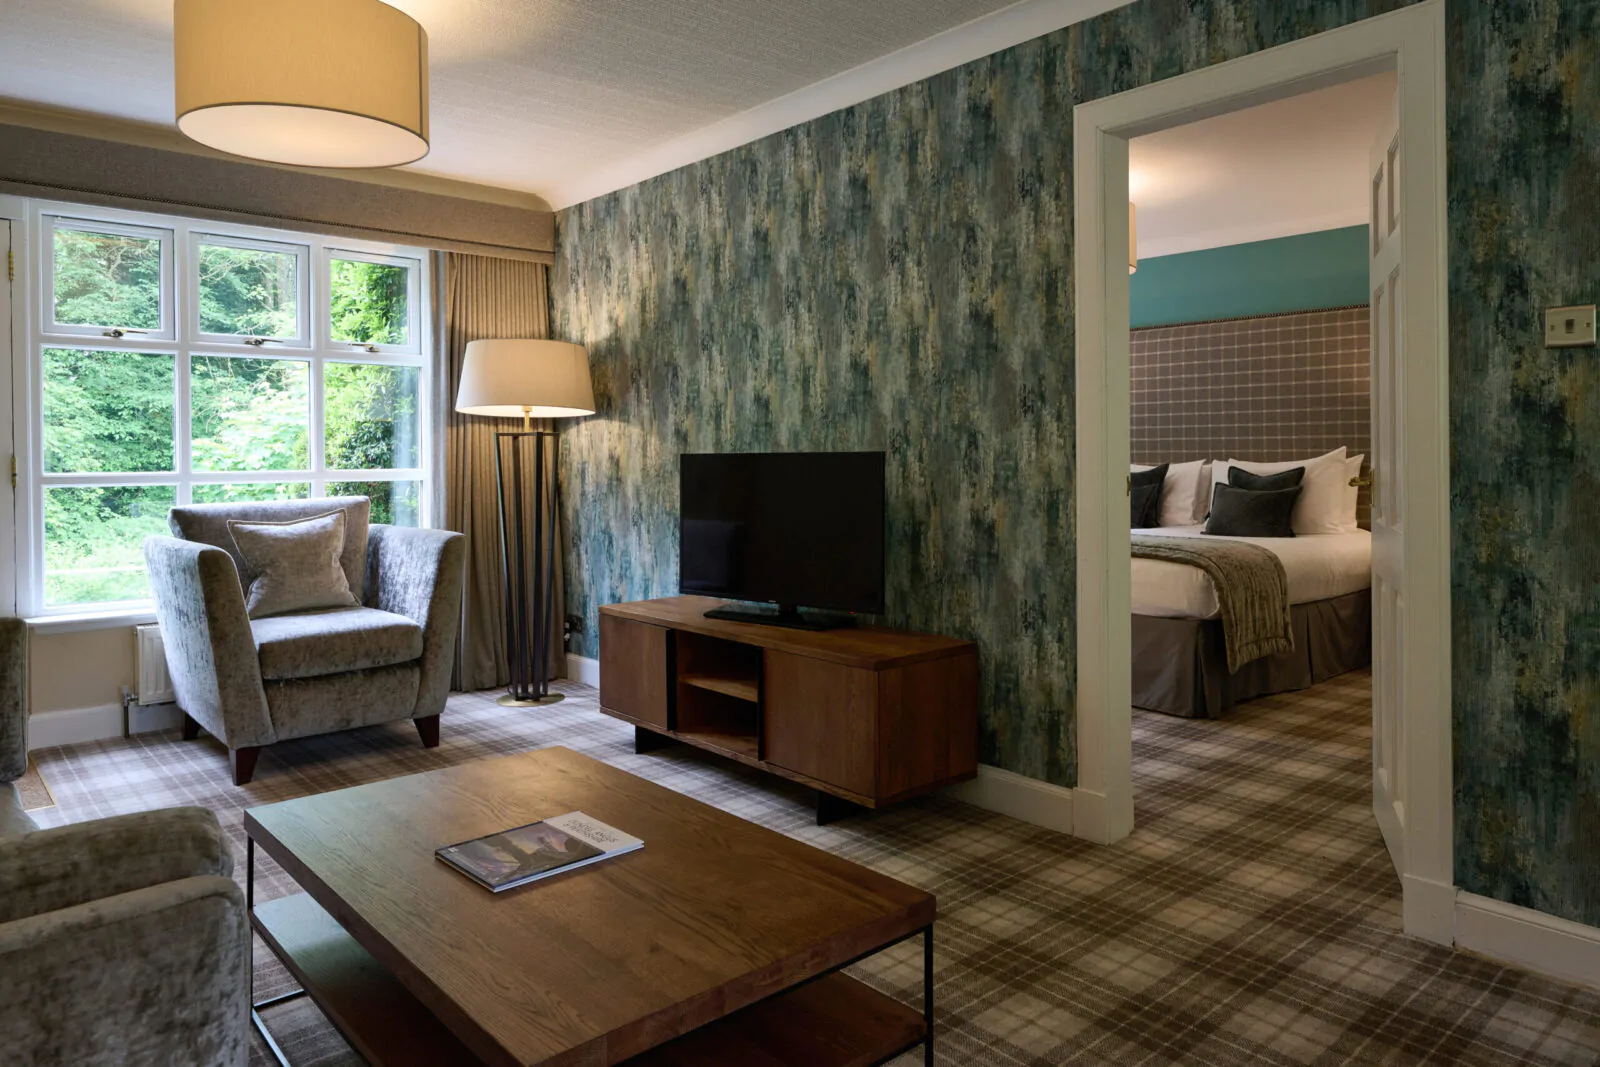 Fairway Suite - Balvaird, lounge through to bedroom